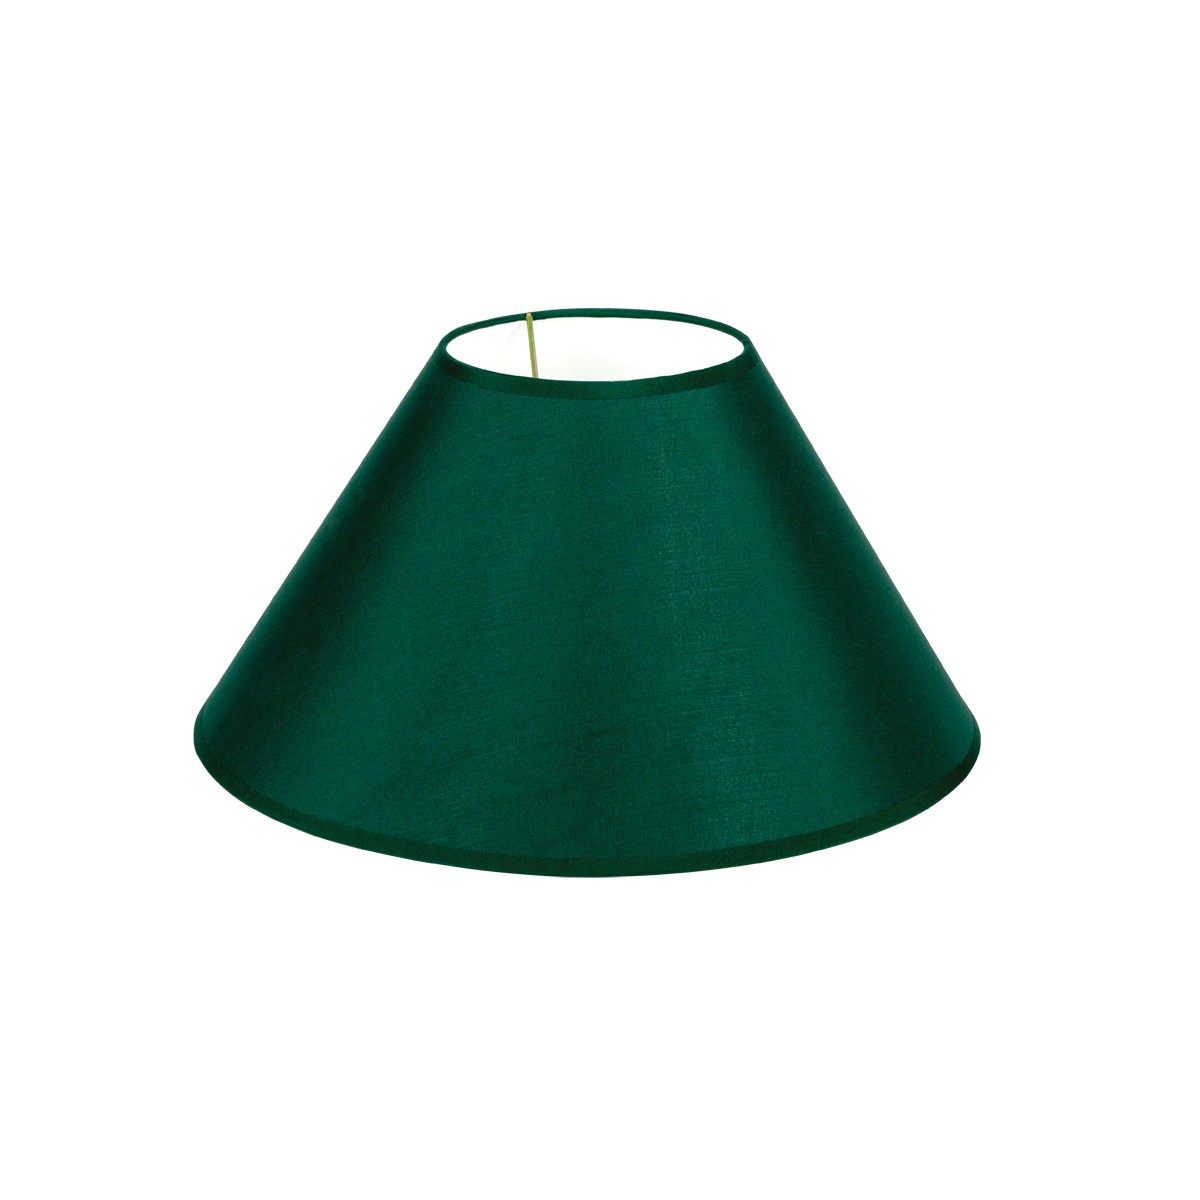 Καπέλο Μονόχρωμο Στρογγυλό Φ30cm Κάτω Πλευρά  -Σε  Πράσινο Χρώμα        VK/E27/E14/D30/GR